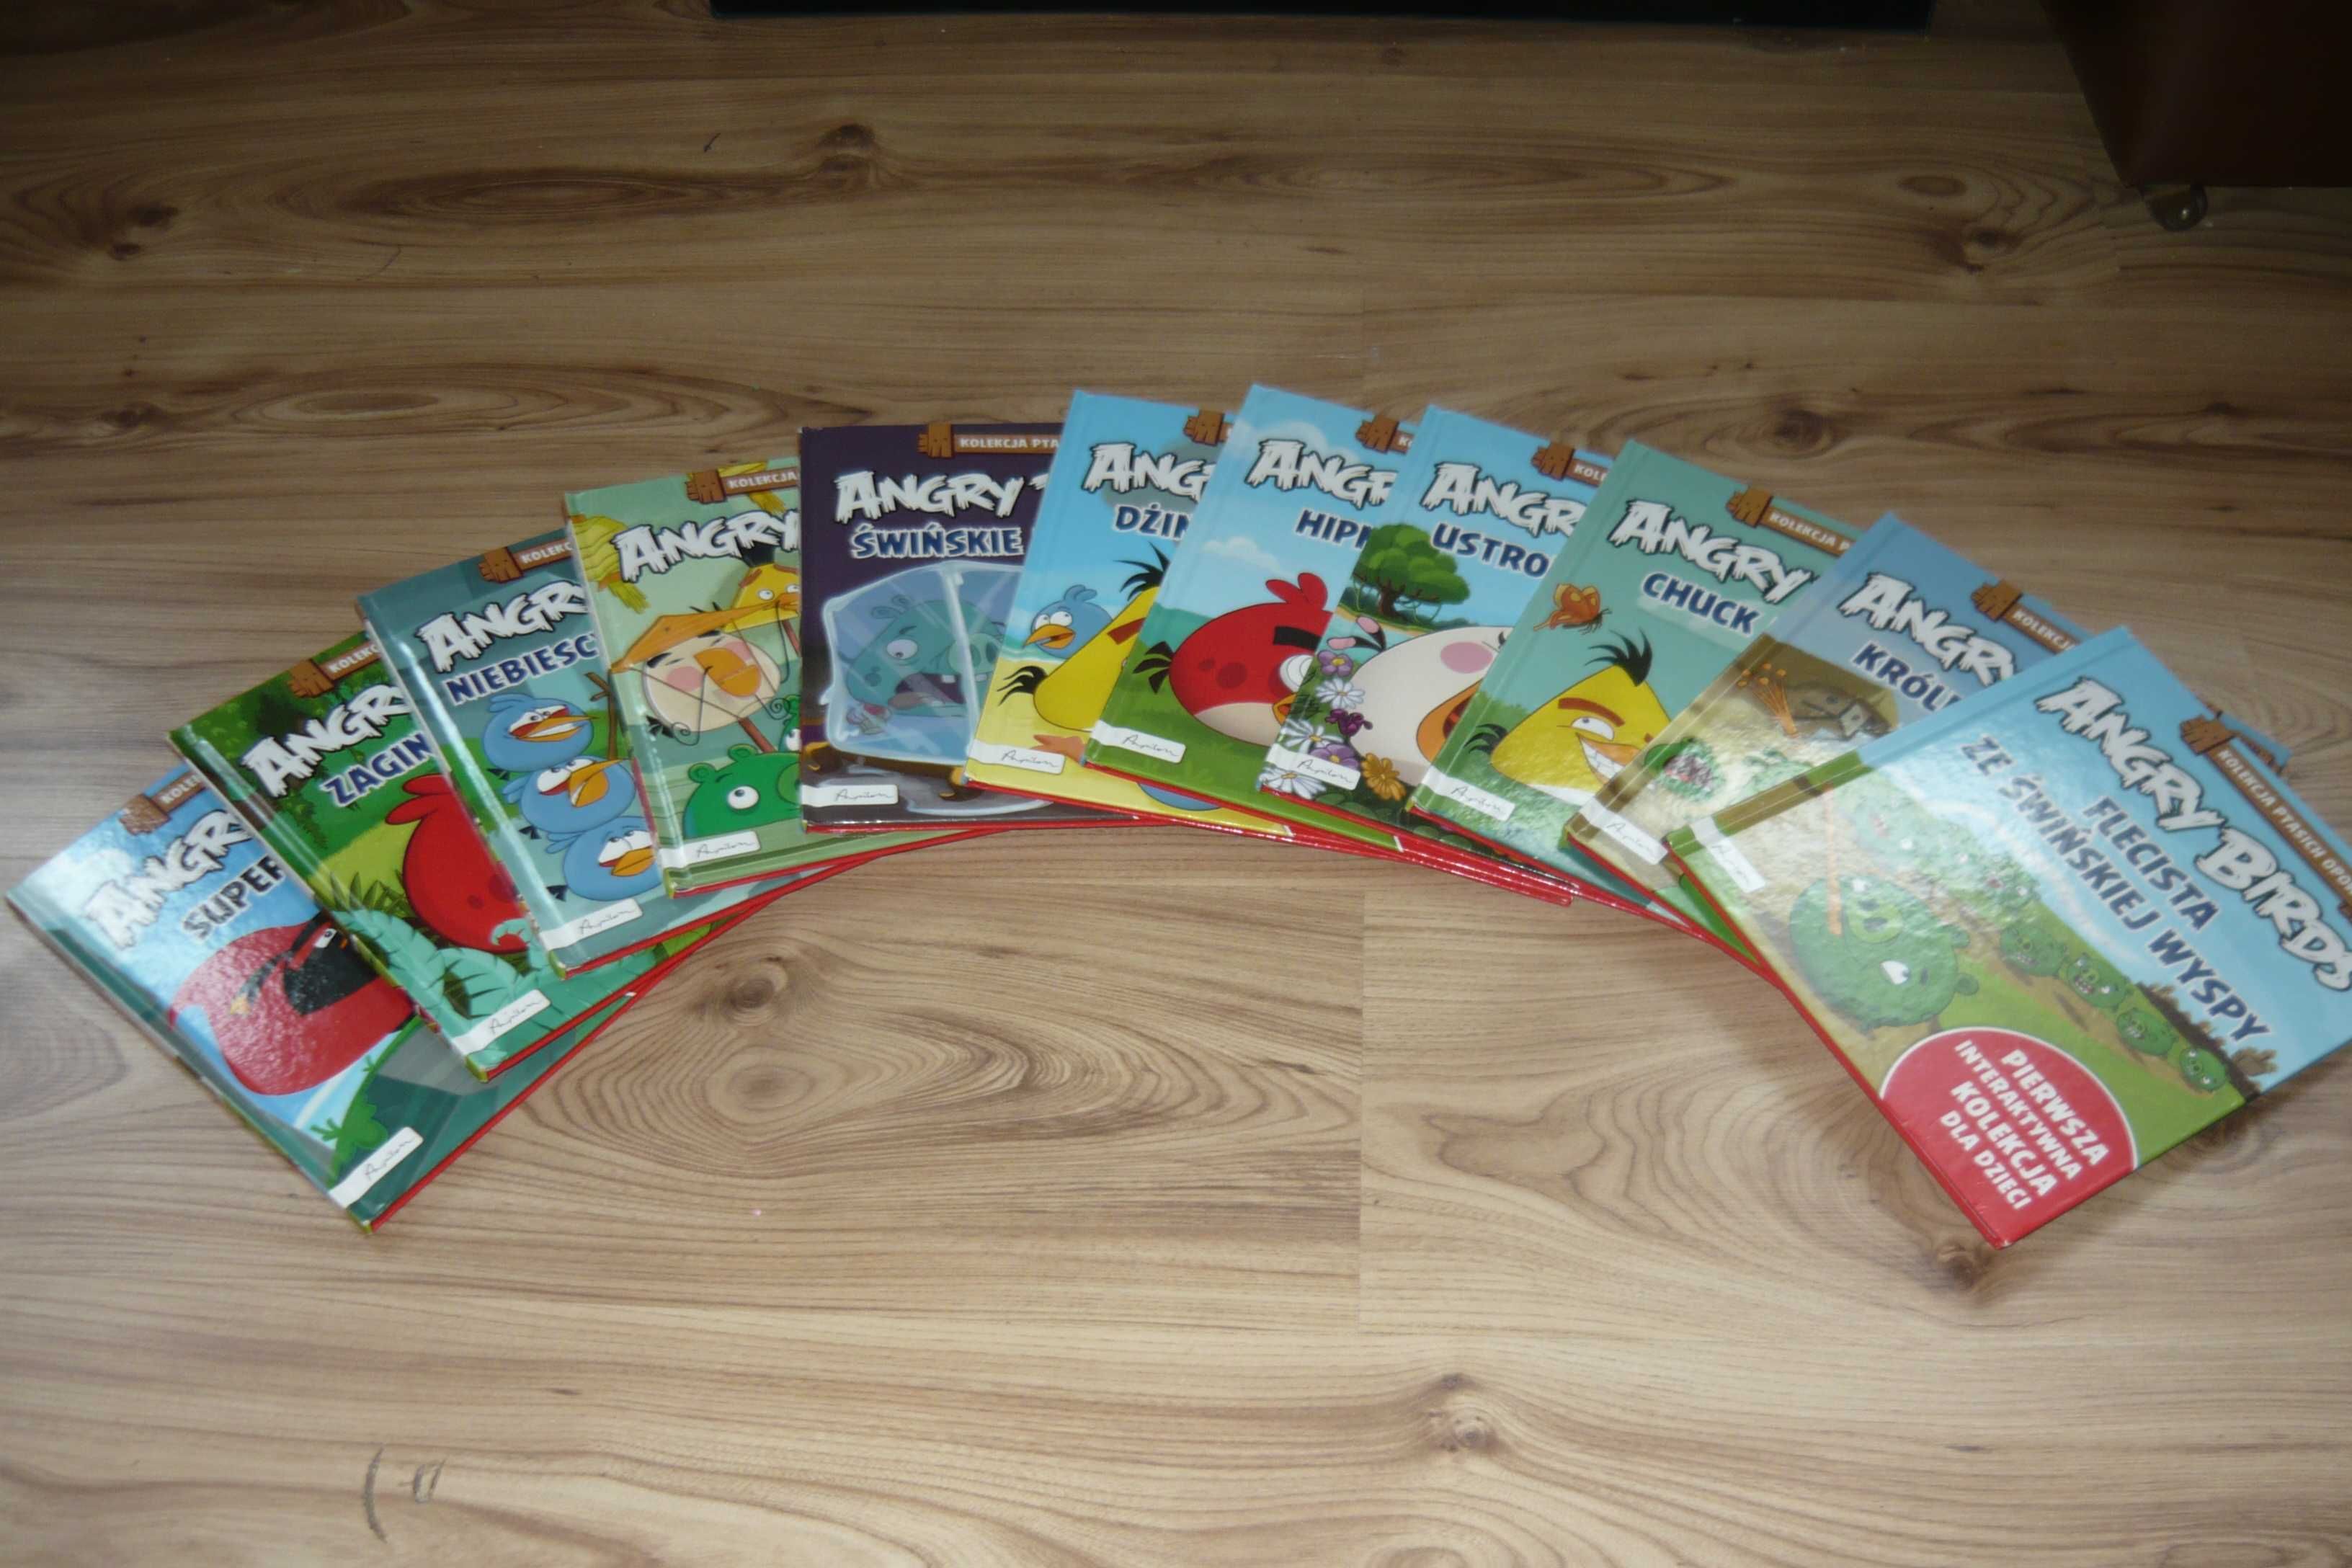 Książki Angry Birds Kolekcja Ptasich Opowieści - Zestaw 11 sztuk